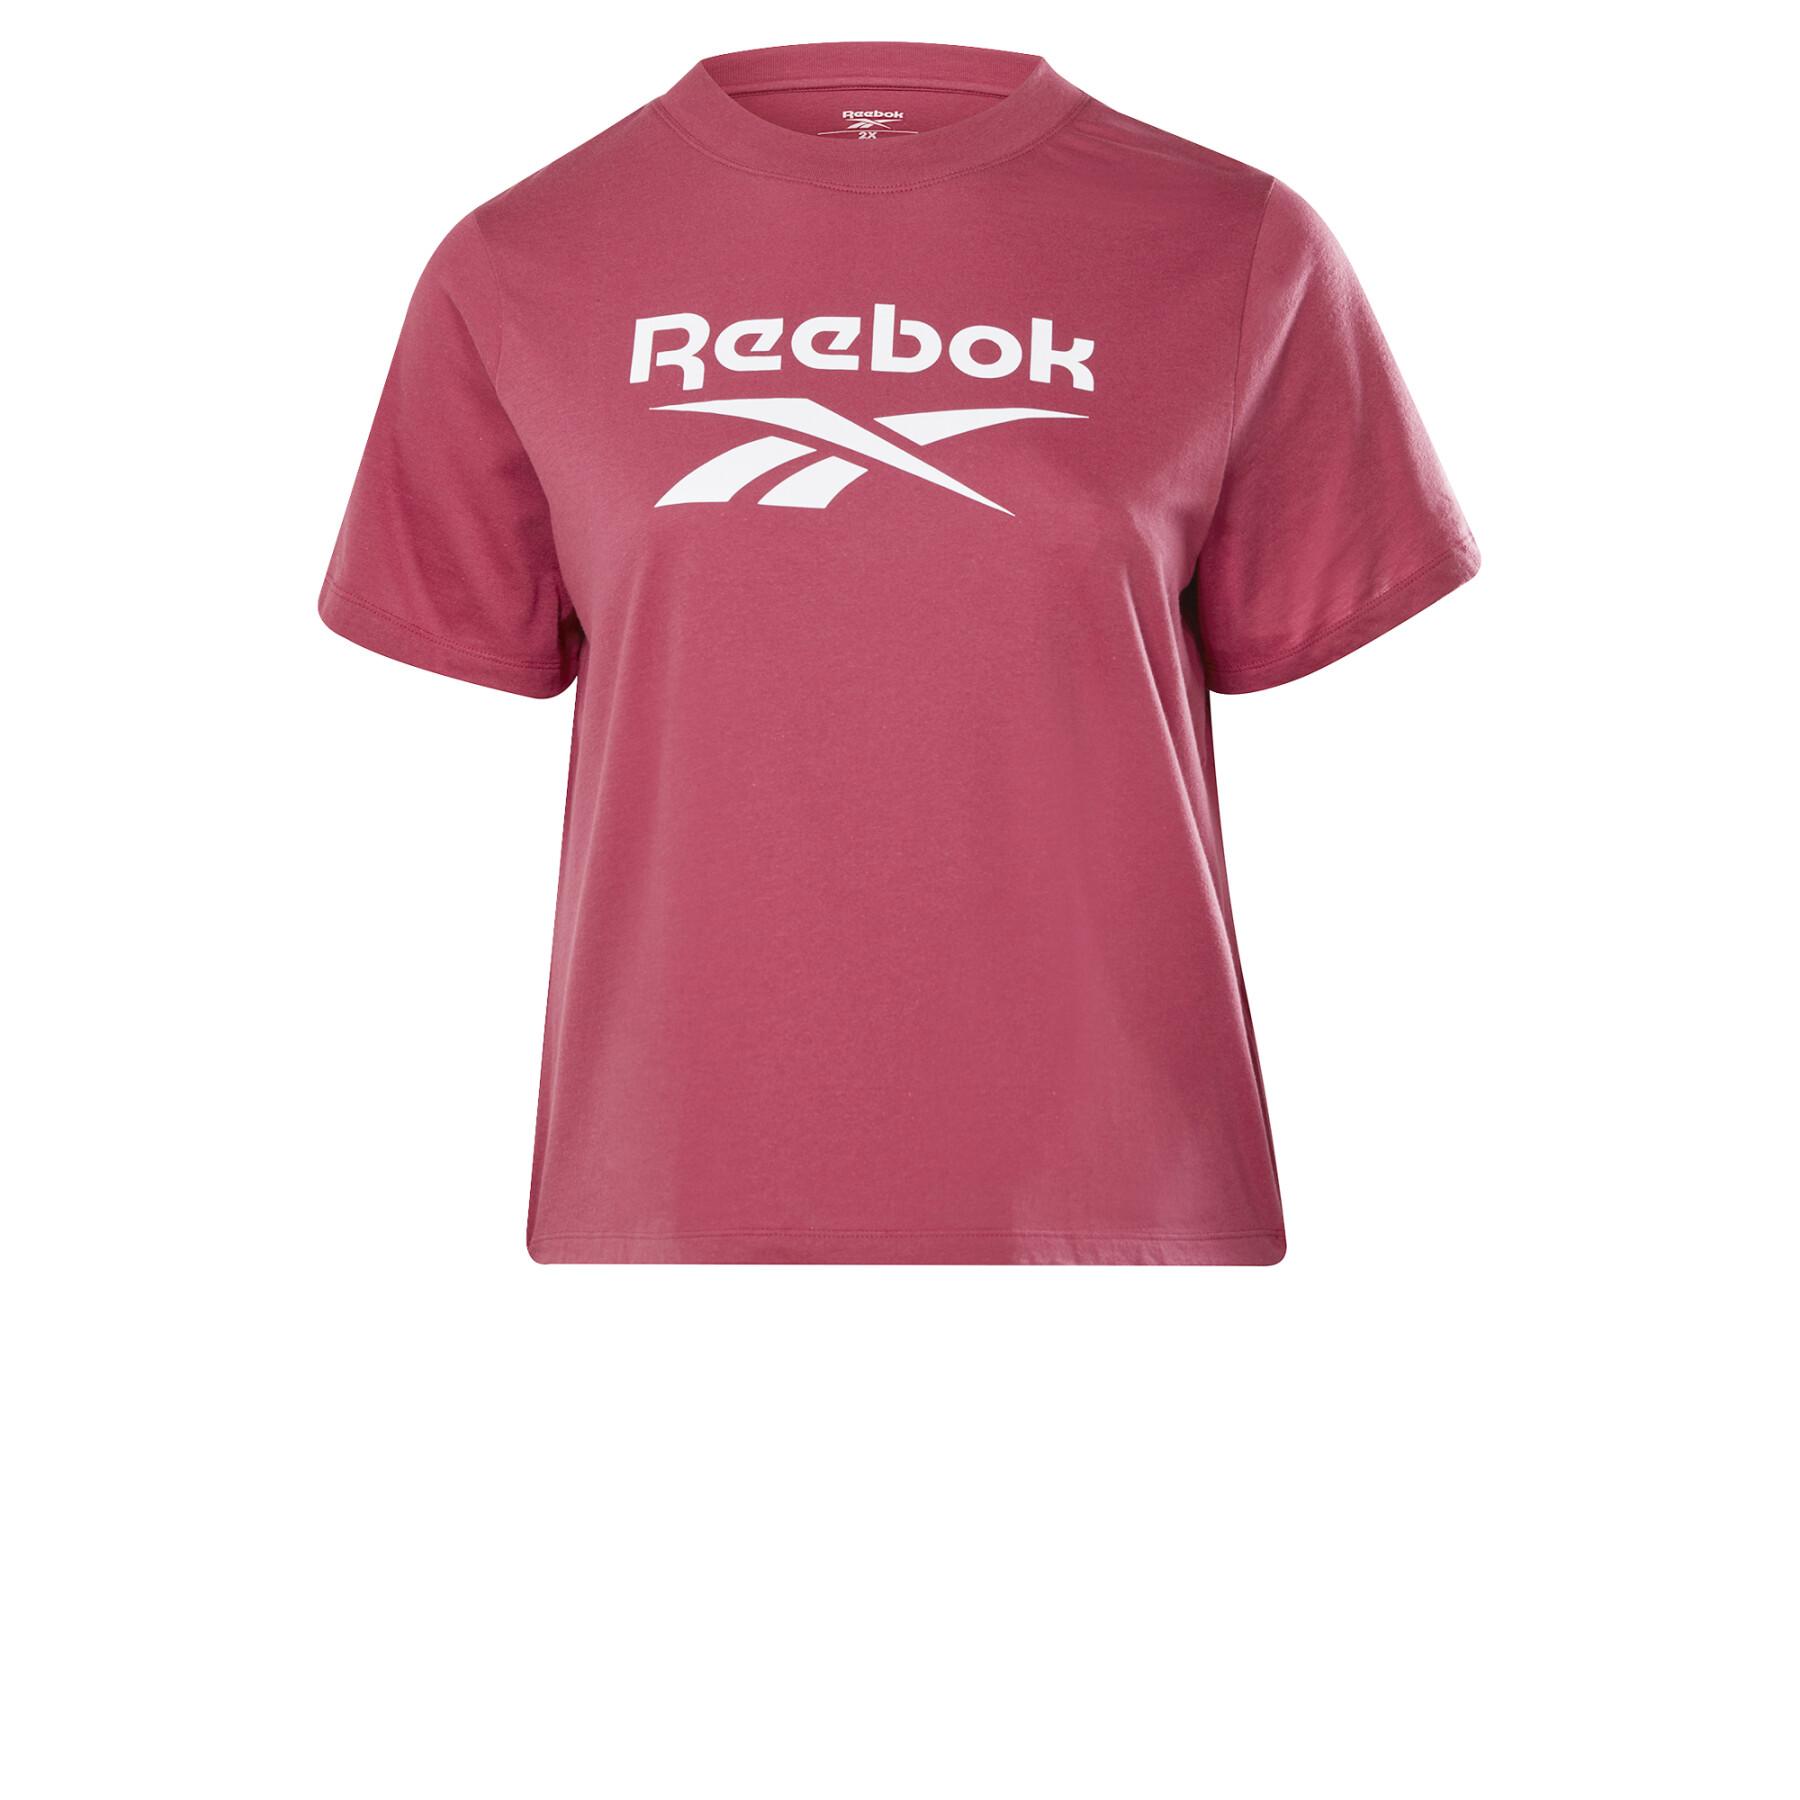 T-shirt large size woman Reebok Identity